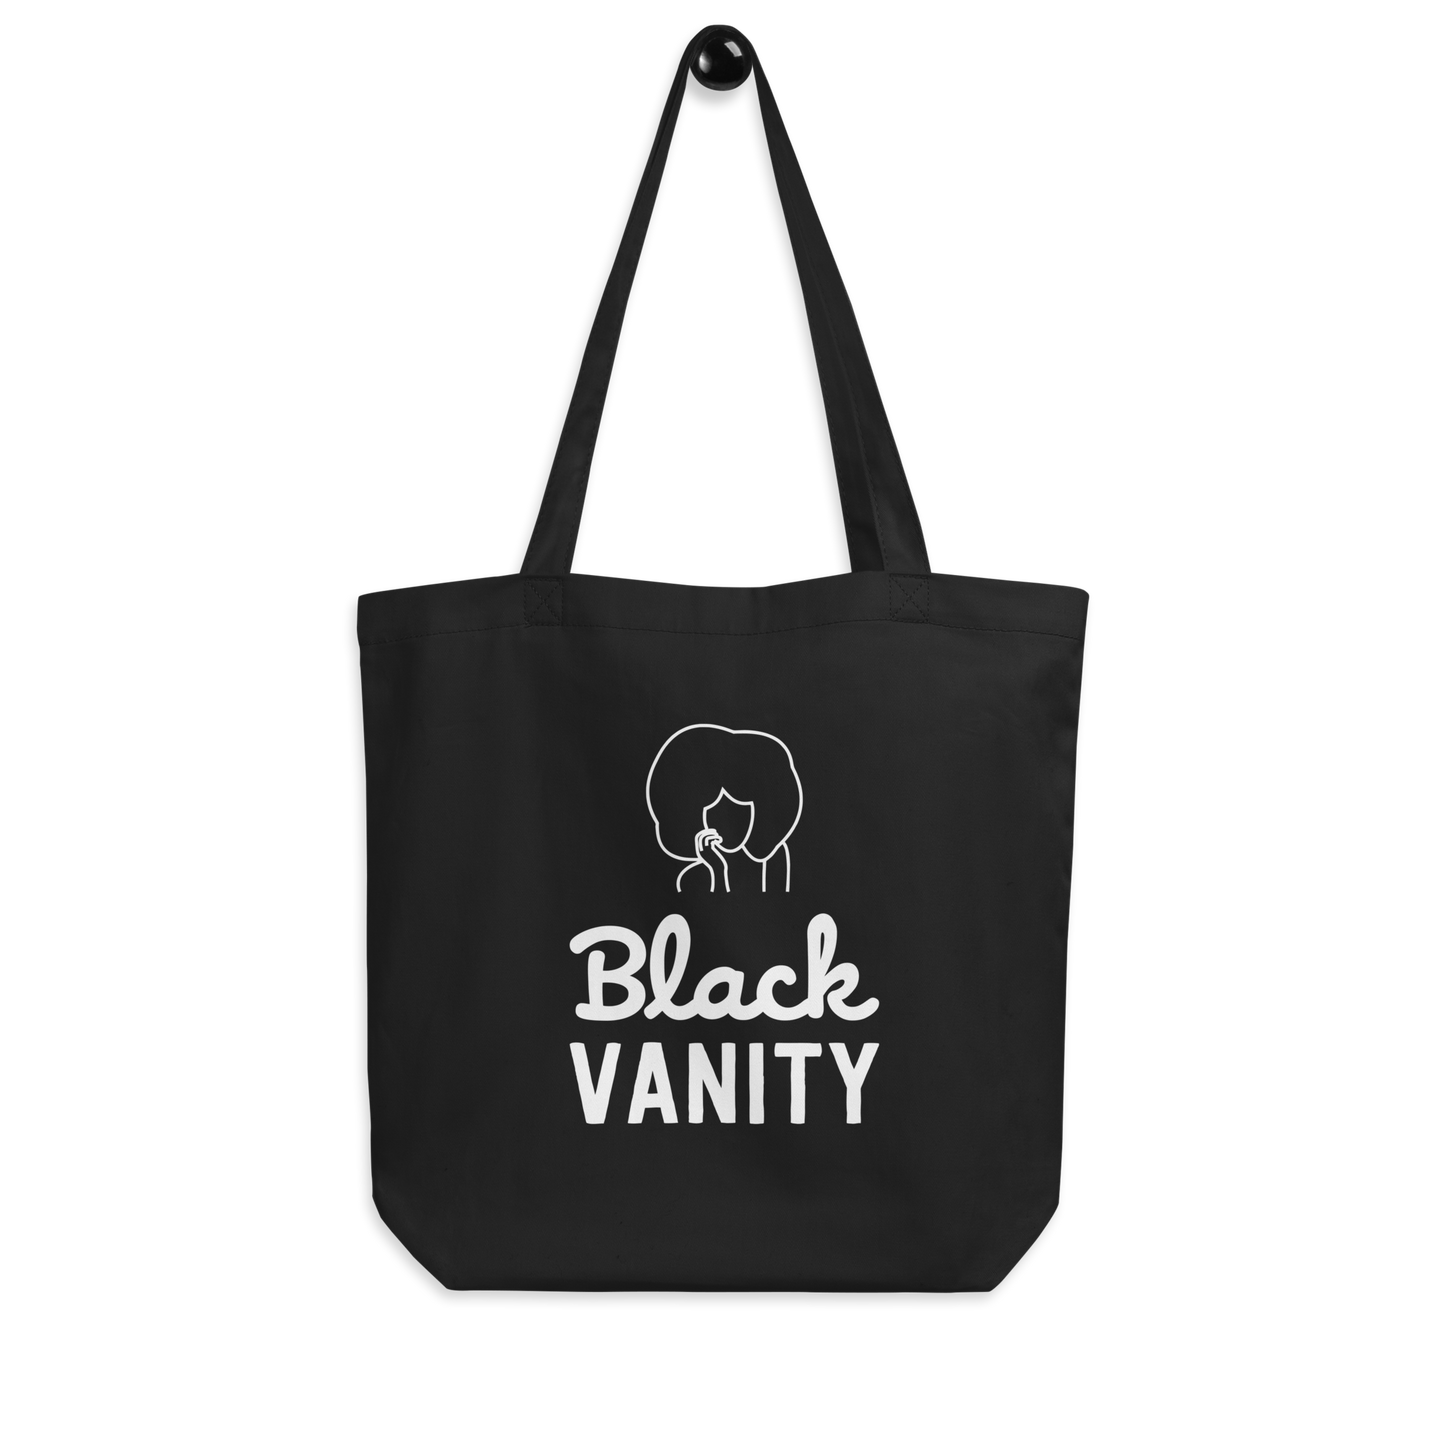 Black Vanity Tote Bag